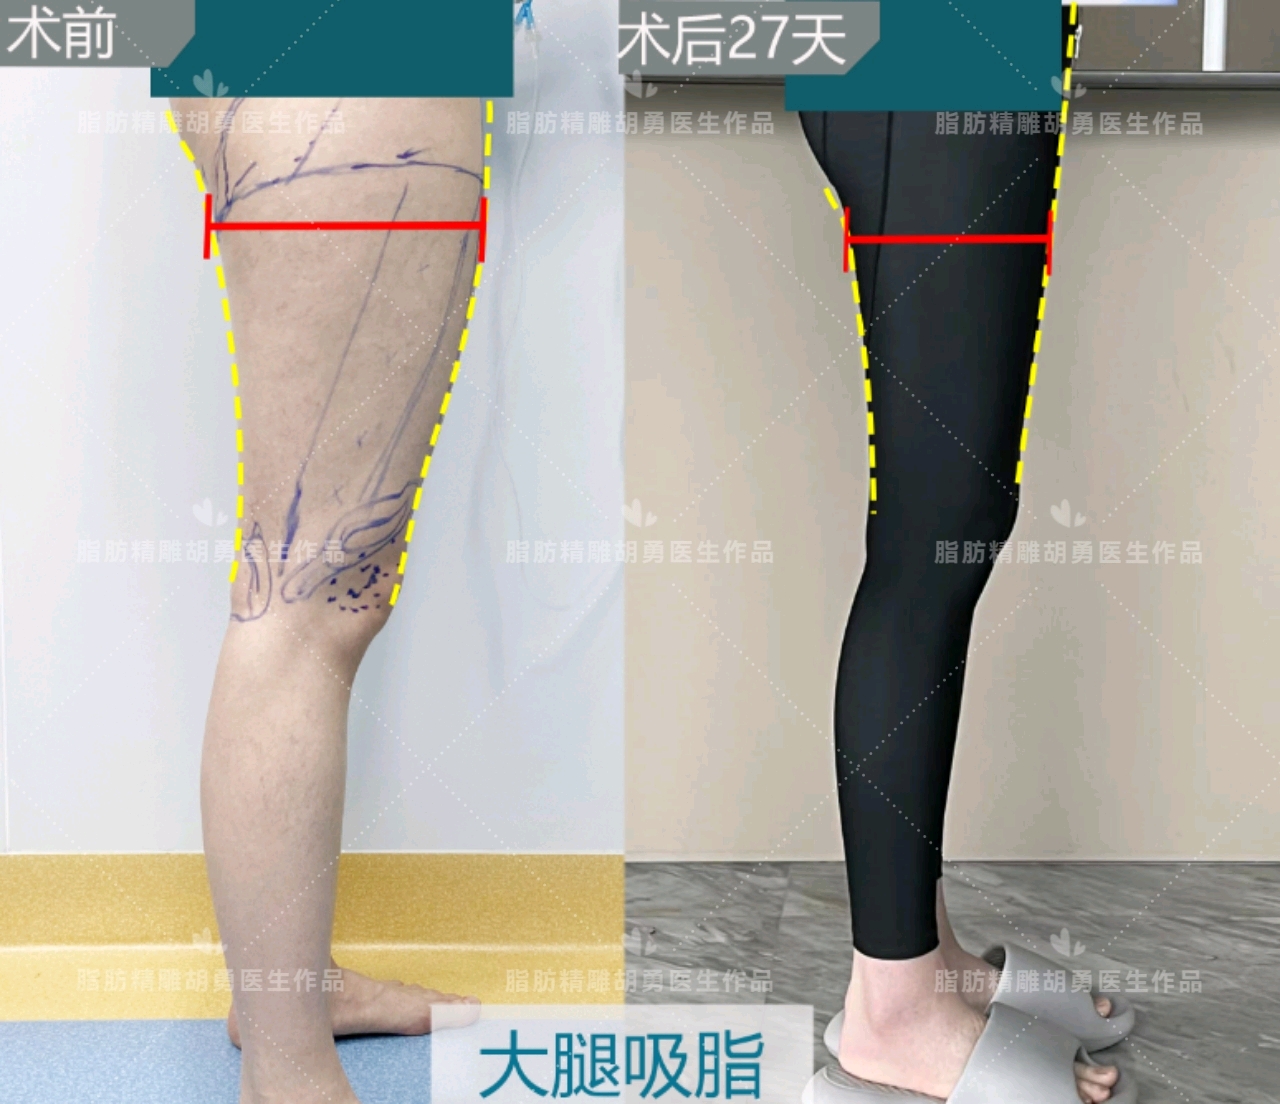 二代威塑-手臂抽脂+大腿抽脂 打造自信迷人曲线 | 佳思优整形医美诊所